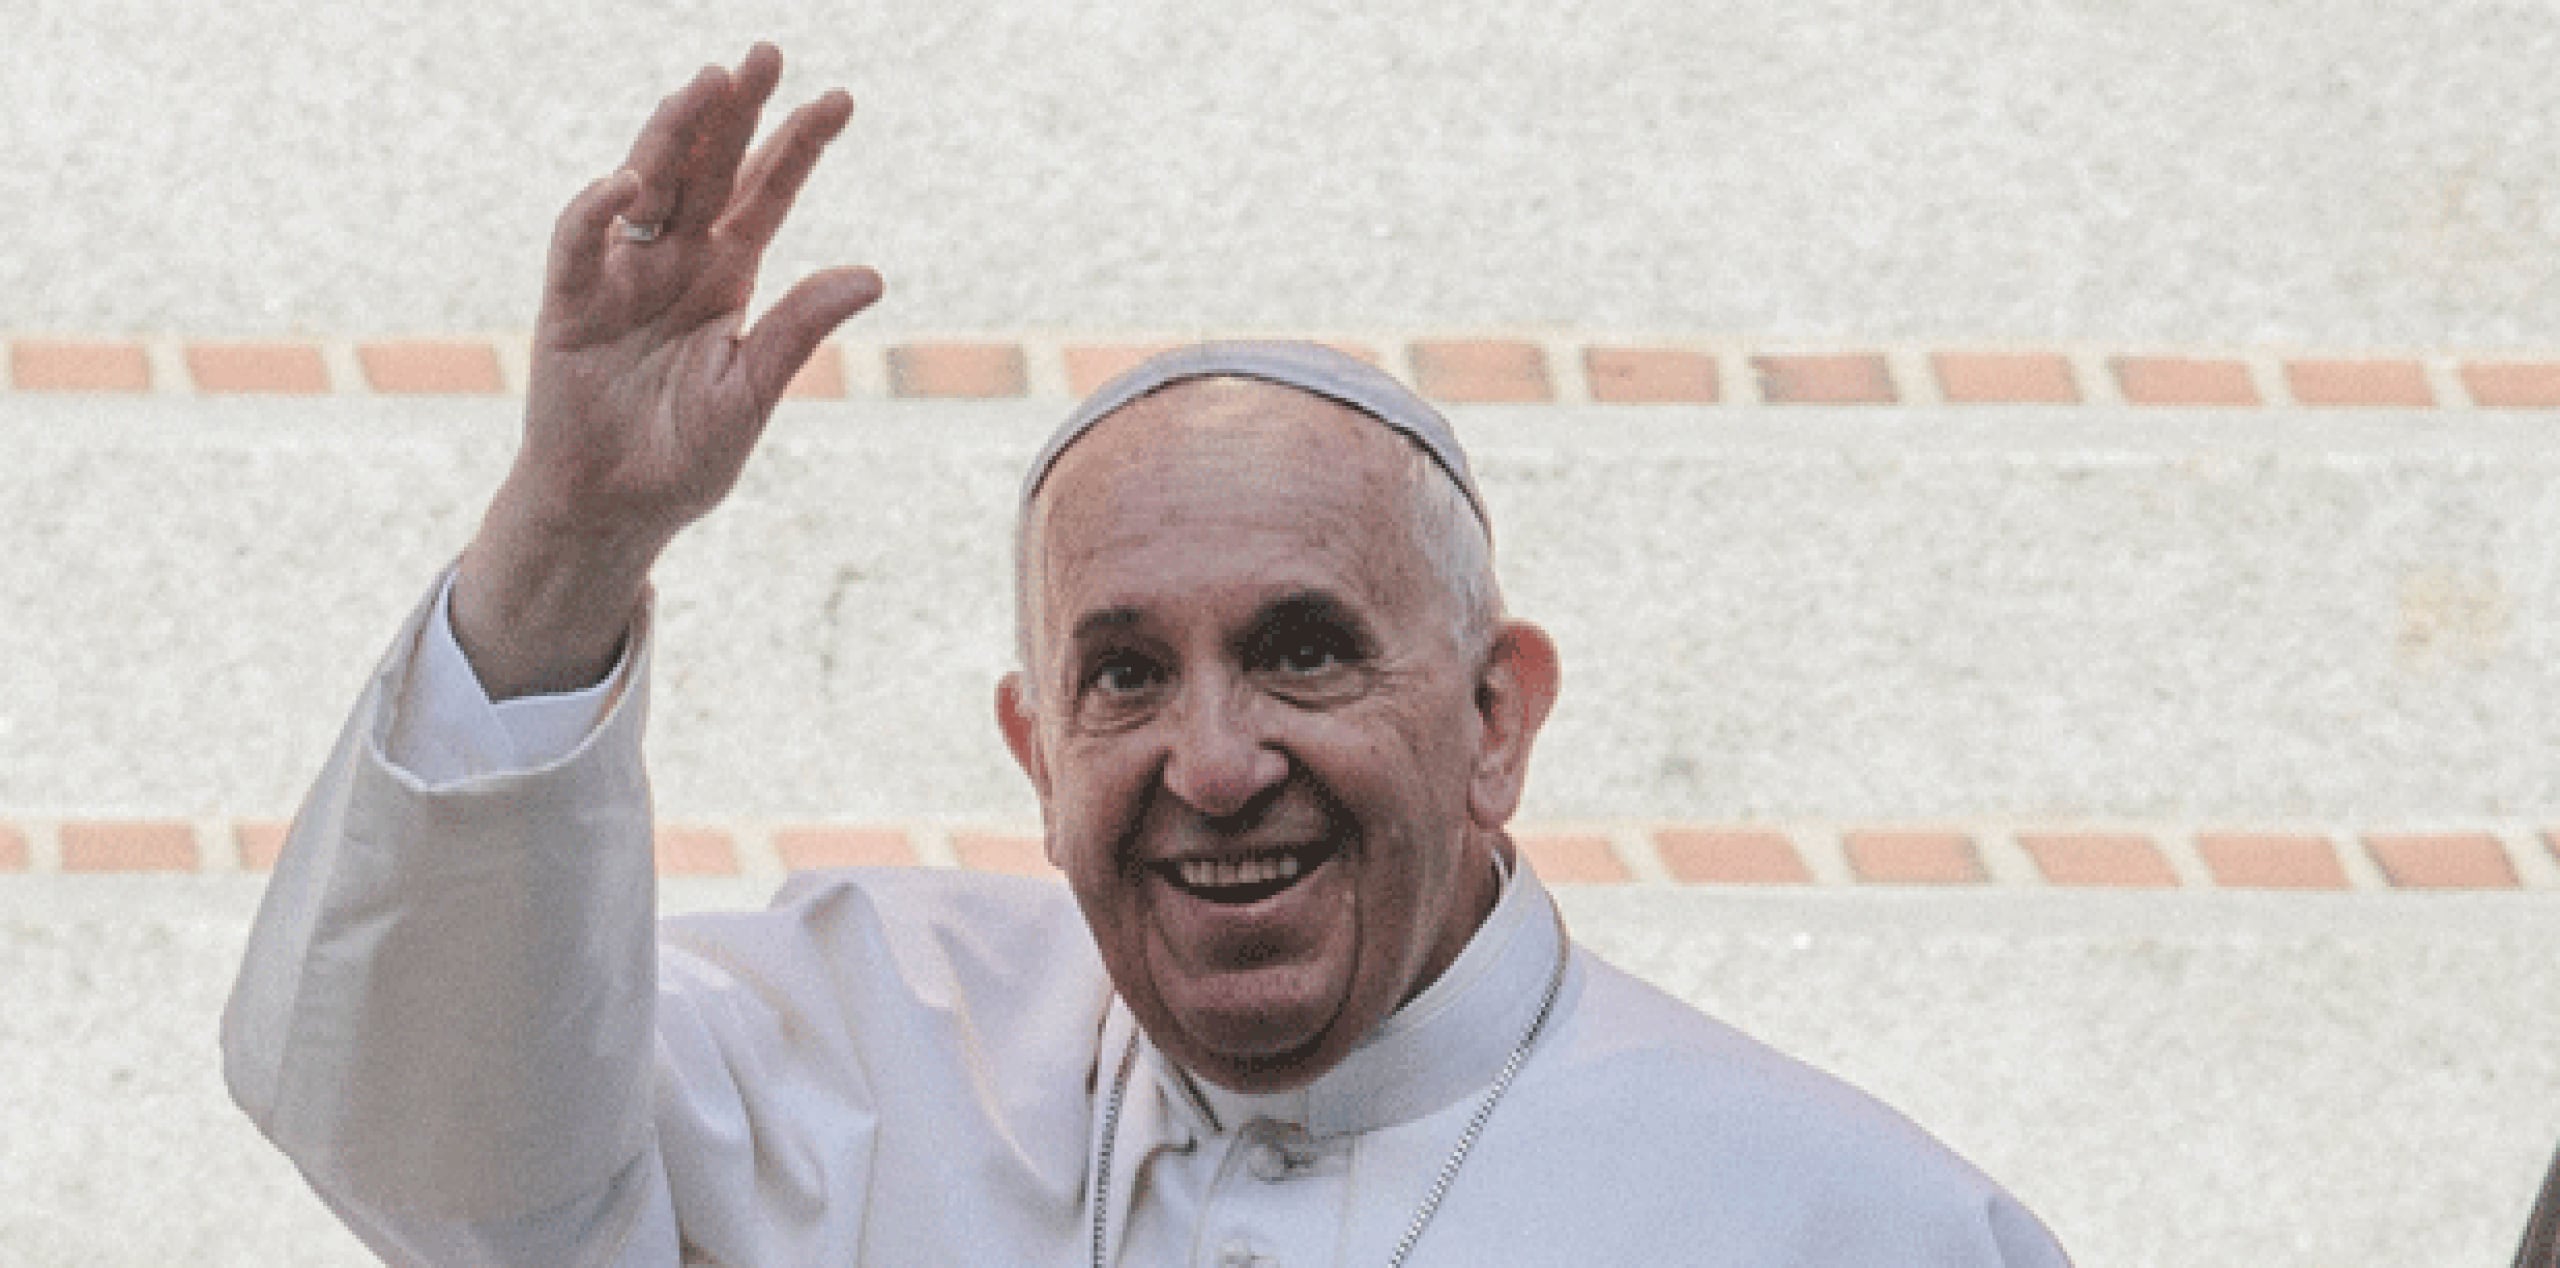 El papa Francisco permanecerá en Estados Unidos hasta el sábado, fecha de regreso al Vaticano. (CHRISTOPHER GREGORY/GFR MEDIA)